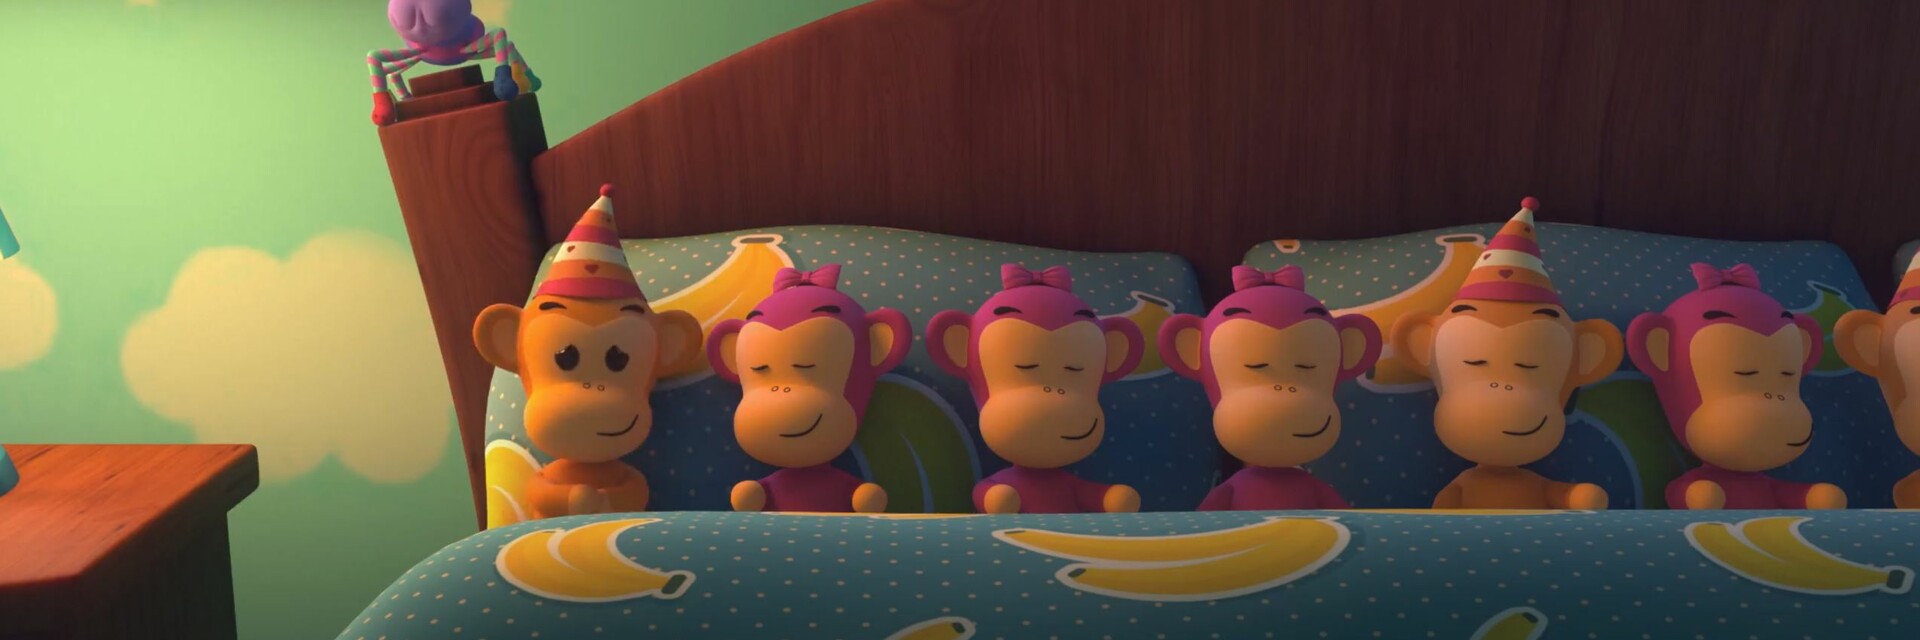 Пять обезьянок прыгали в кроватке Маша и медведь